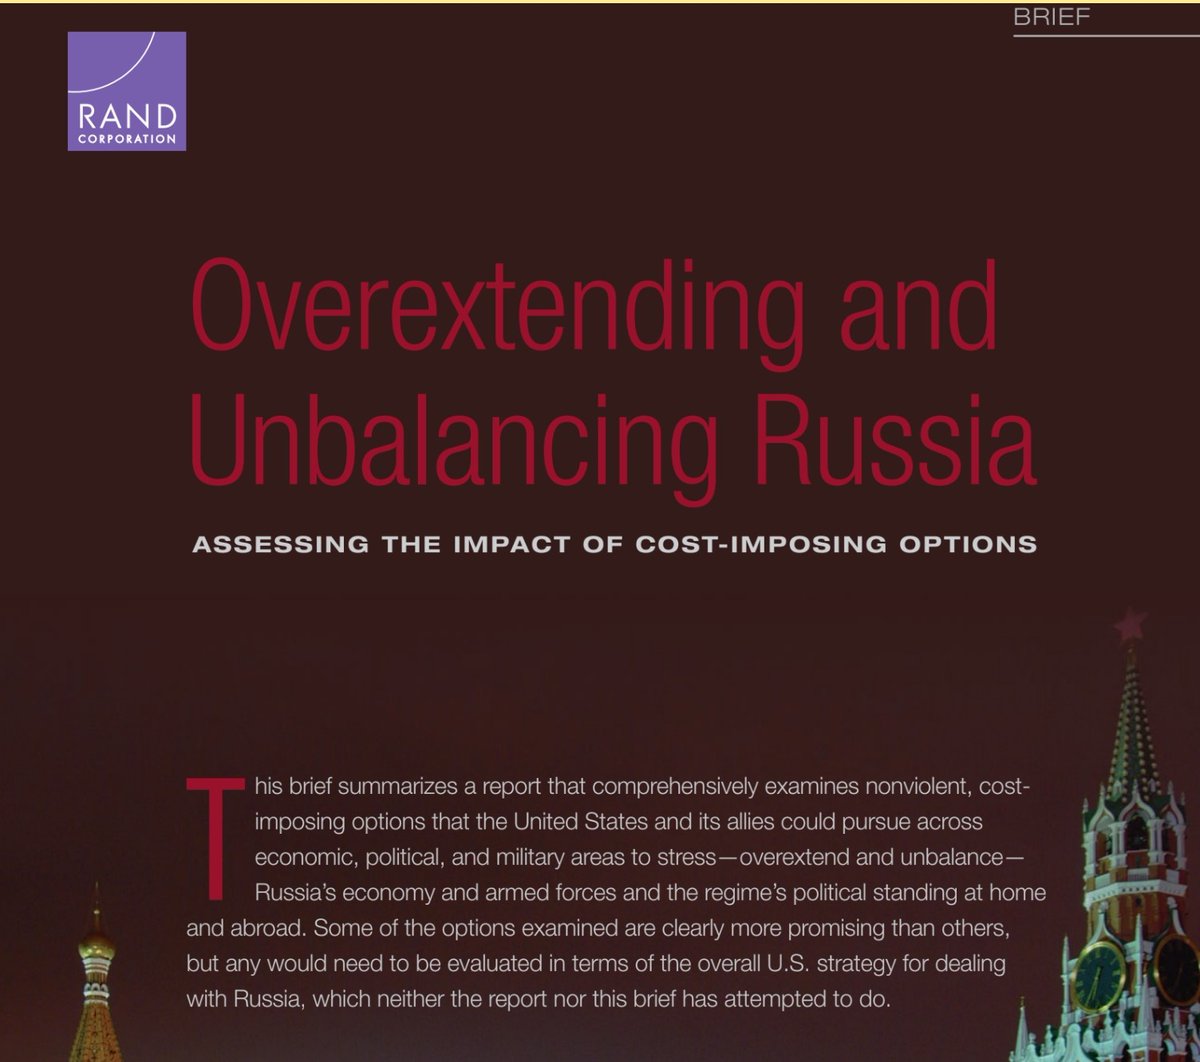 Wer meint, #Putin wolle ja keinen #Frieden und er führe einen unbegründeten Angriffskrieg, kann sich ja mal diese Studie durchlesen:
RAND: Overextending and Unbalancing Russia: Assessing the Impact of Cost-Imposing Options